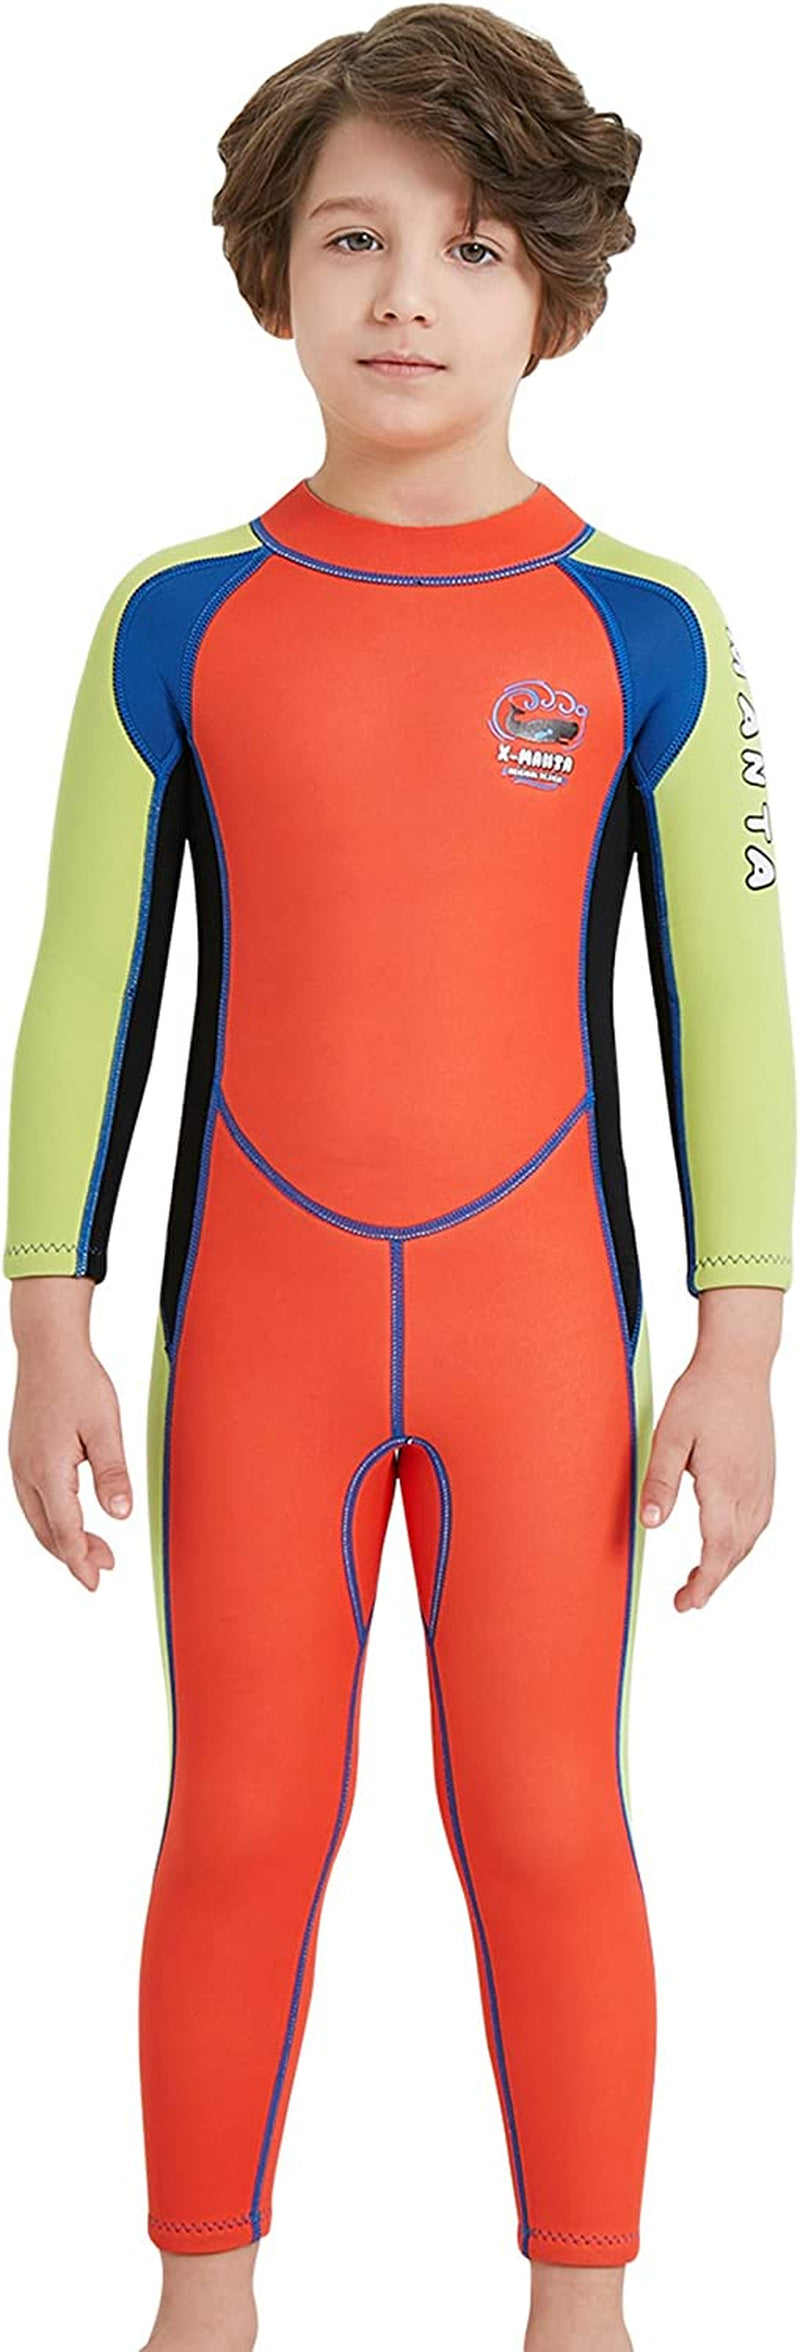 Kids Wetsuit Swimsuit 2.5Mm Neoprene Boy Girl Long Sleeve Diving Suit Swimwear